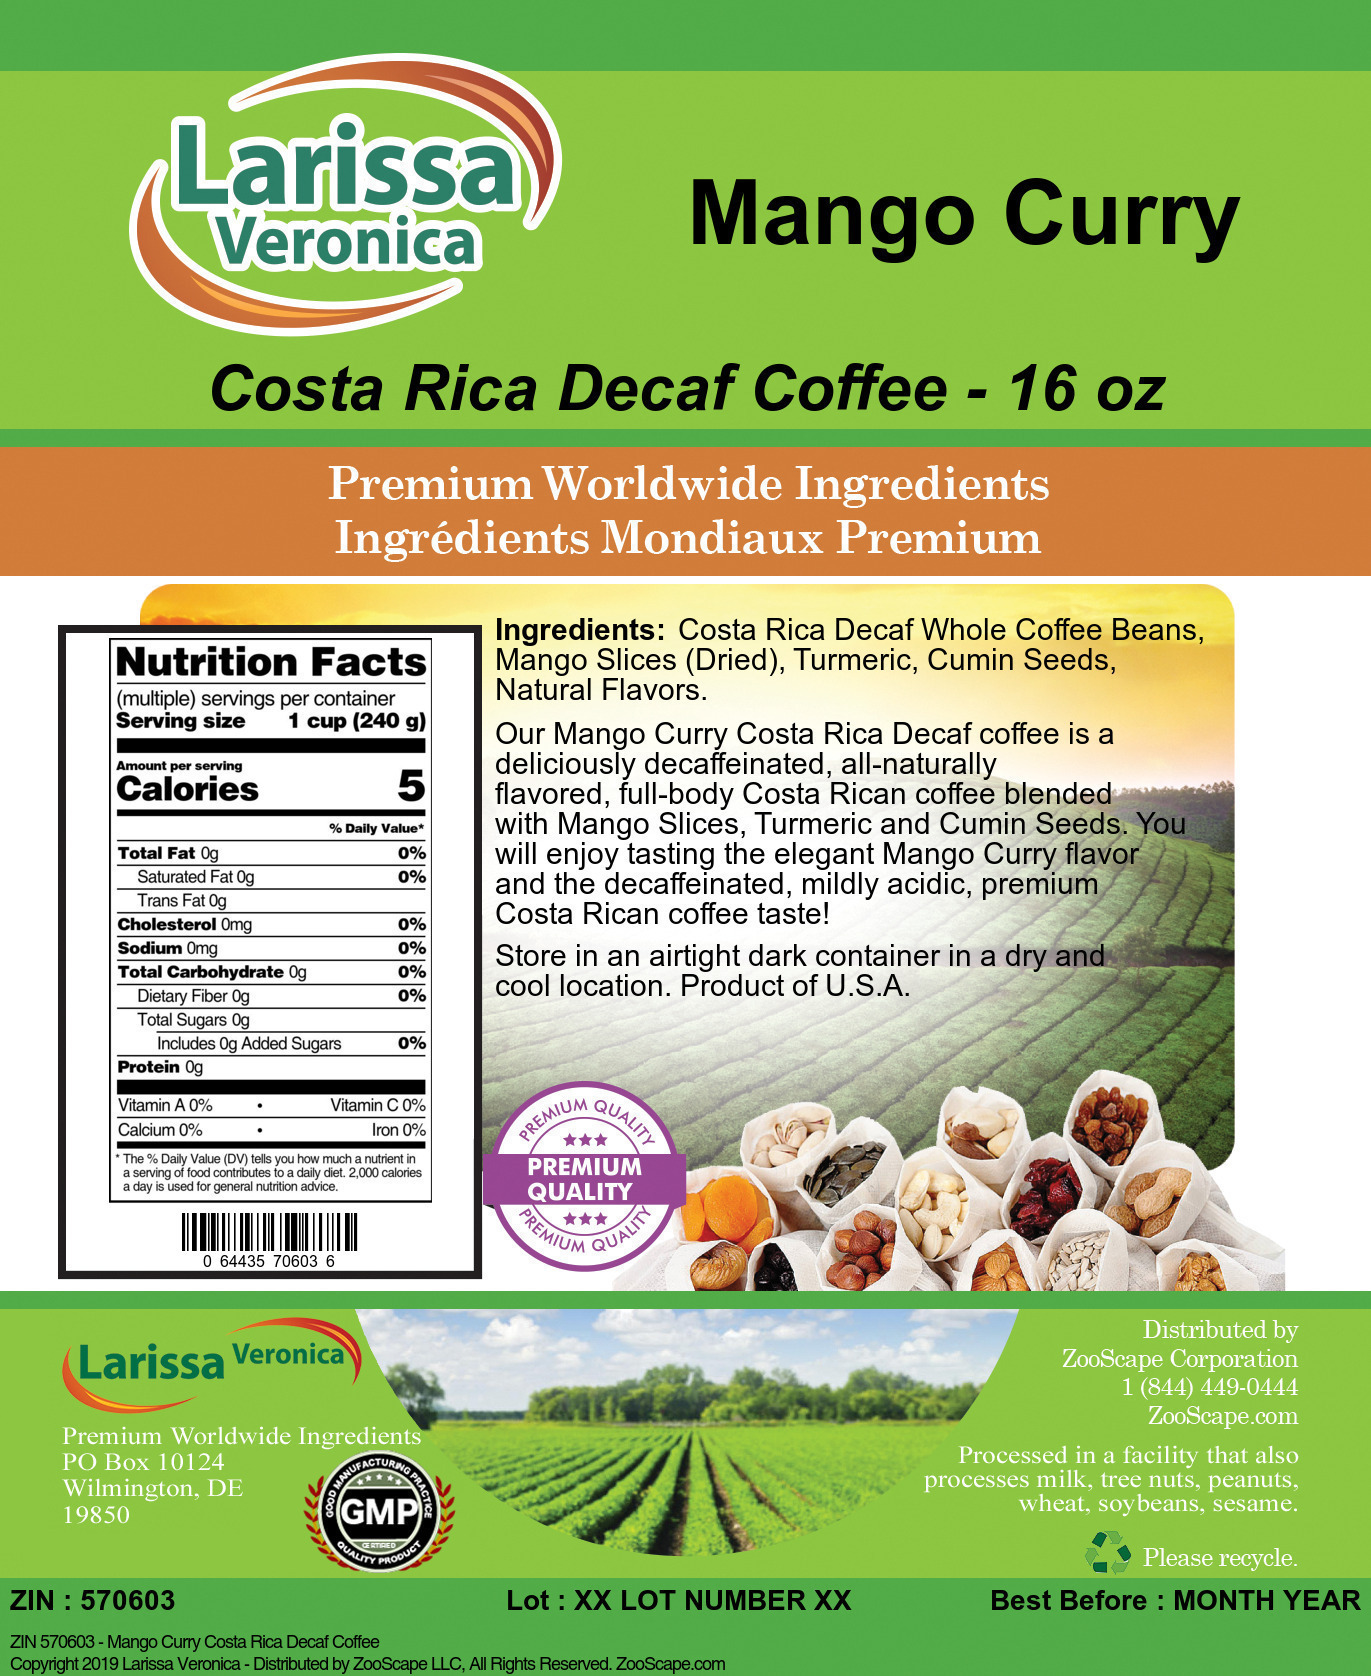 Mango Curry Costa Rica Decaf Coffee - Label